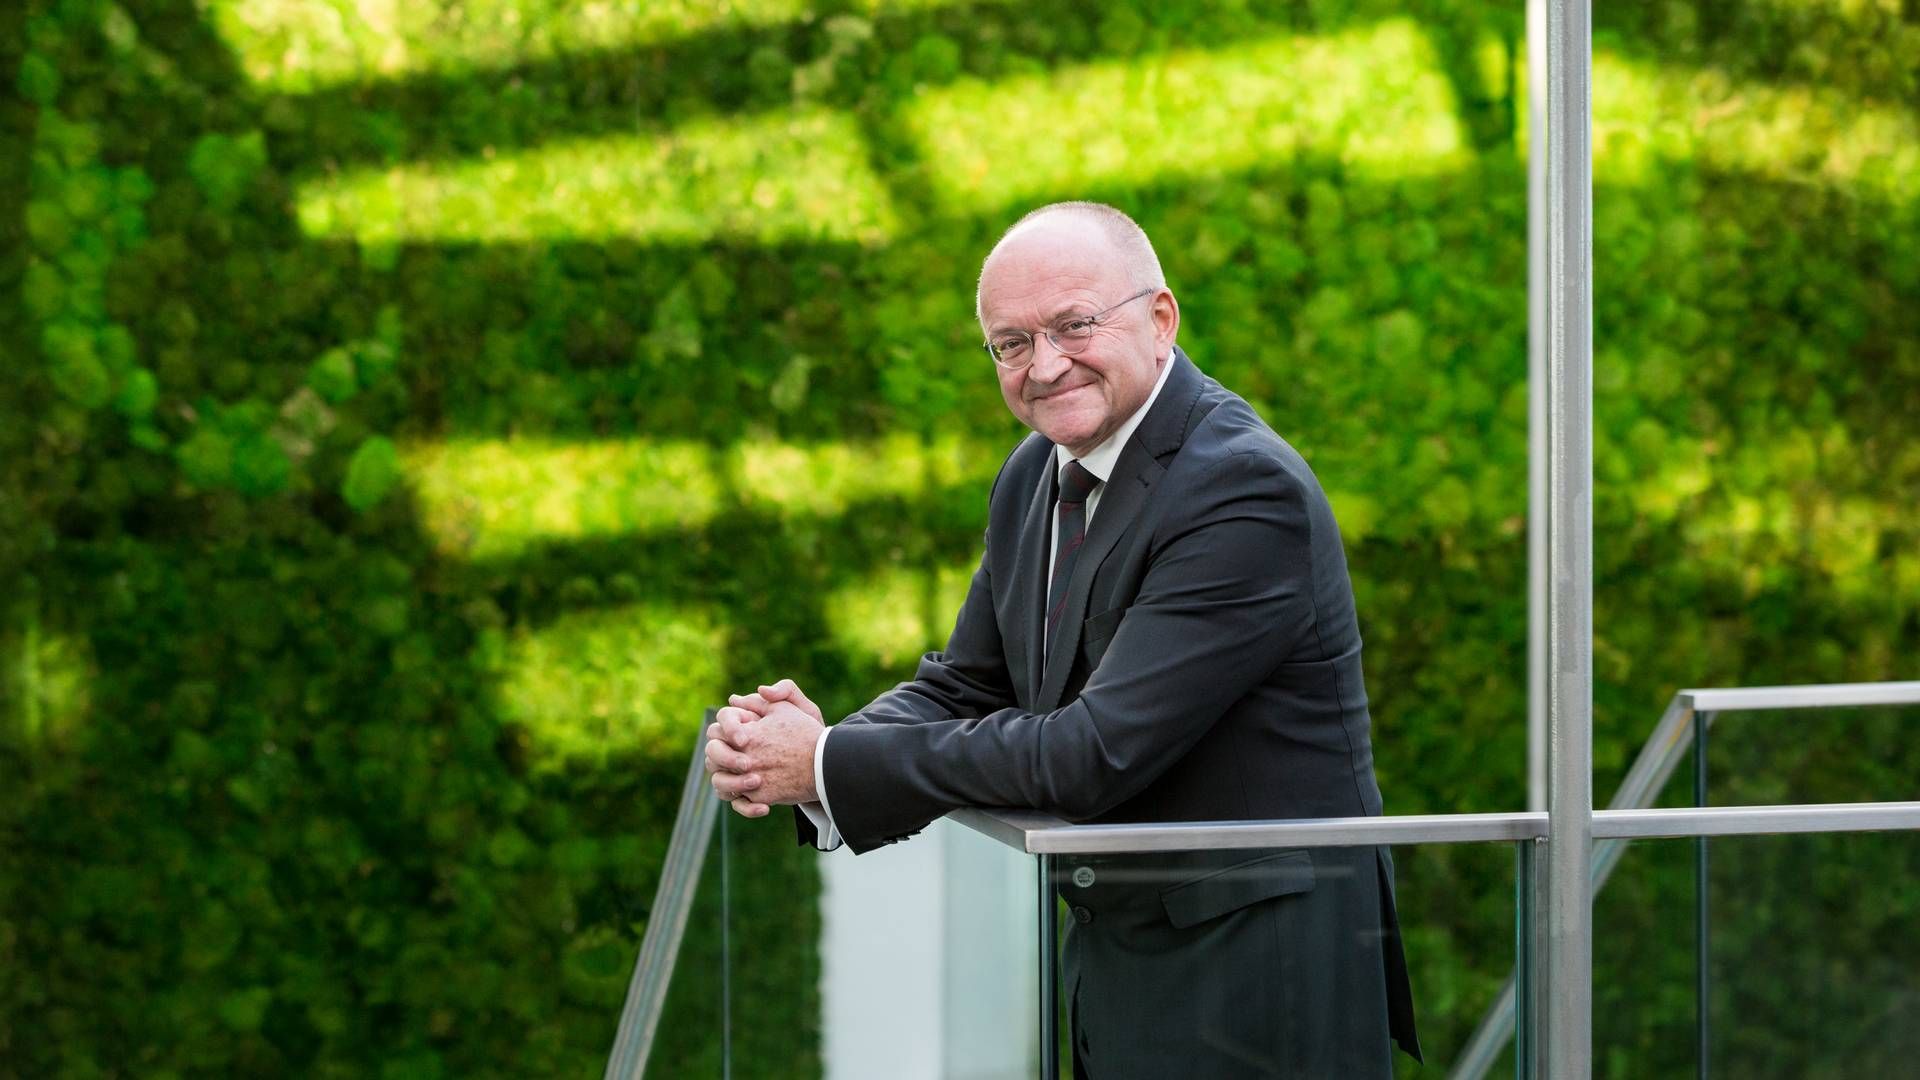 Adm. direktør i Pensiondanmark, Torben Möger Pedersen, nyder godt af at have investeret massivt i grøn infrastruktur for over et årti siden. | Foto: Ursula Bach/ Pensiondanmark